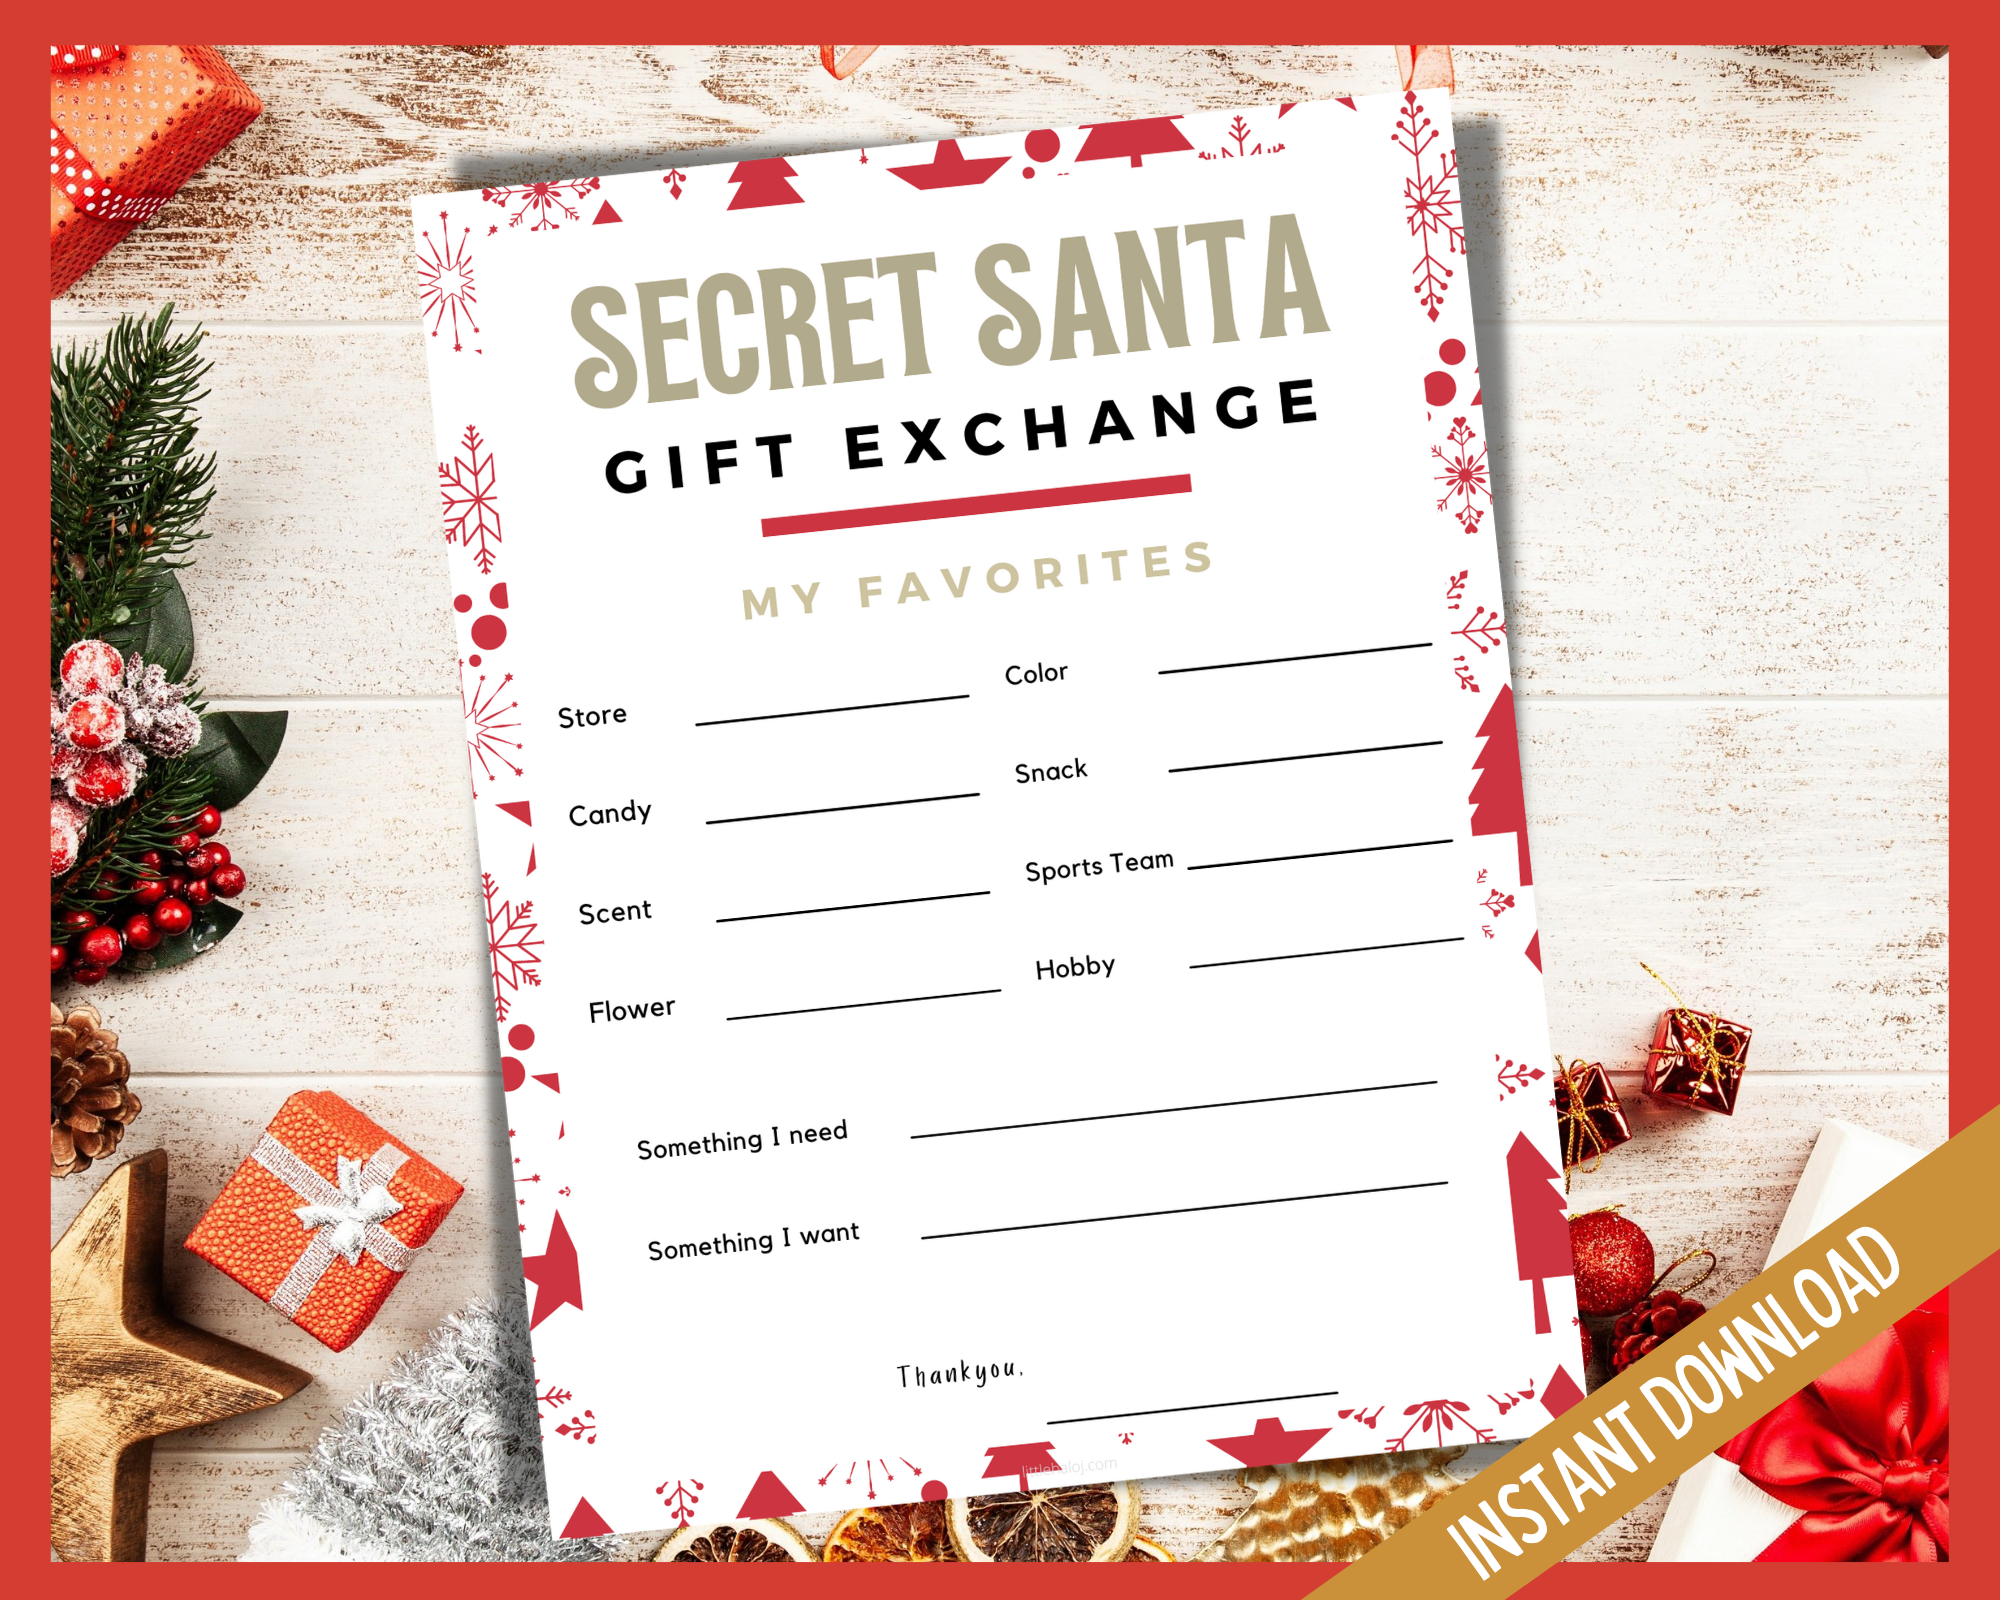 A Broke Girl's Gift Guide: Secret Santa